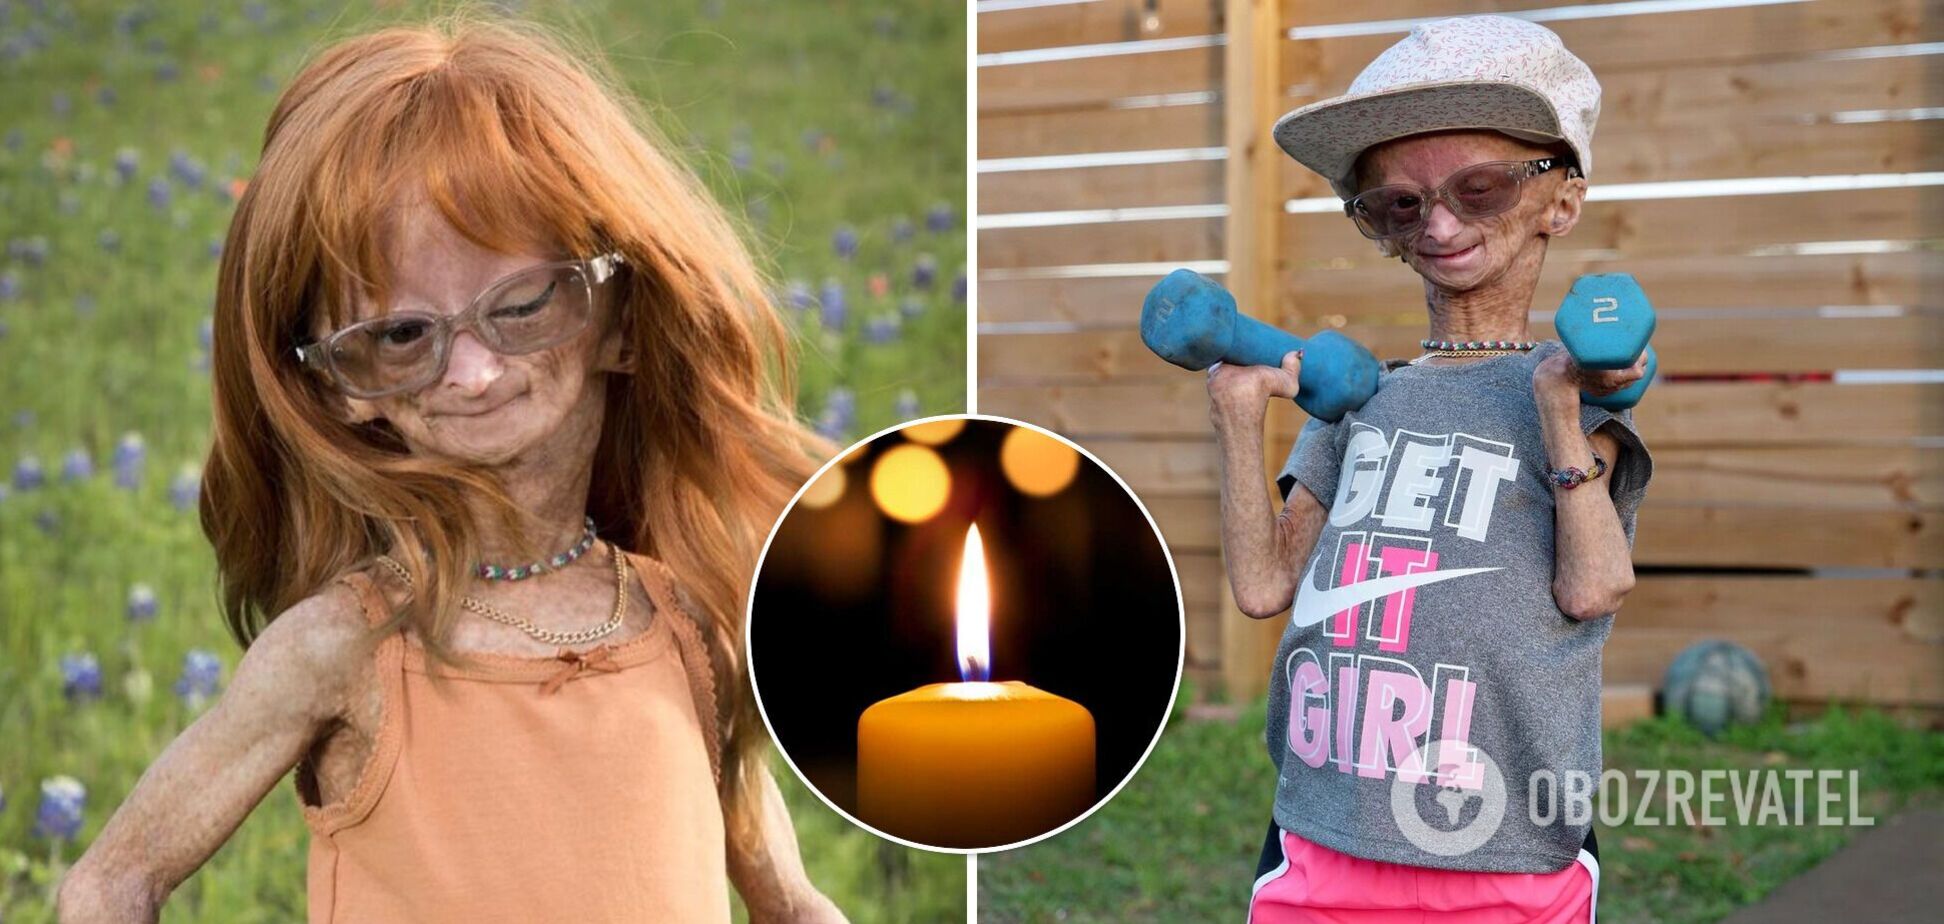 Умерла 15-летняя девочка и звезда YouTube с лицом старушки